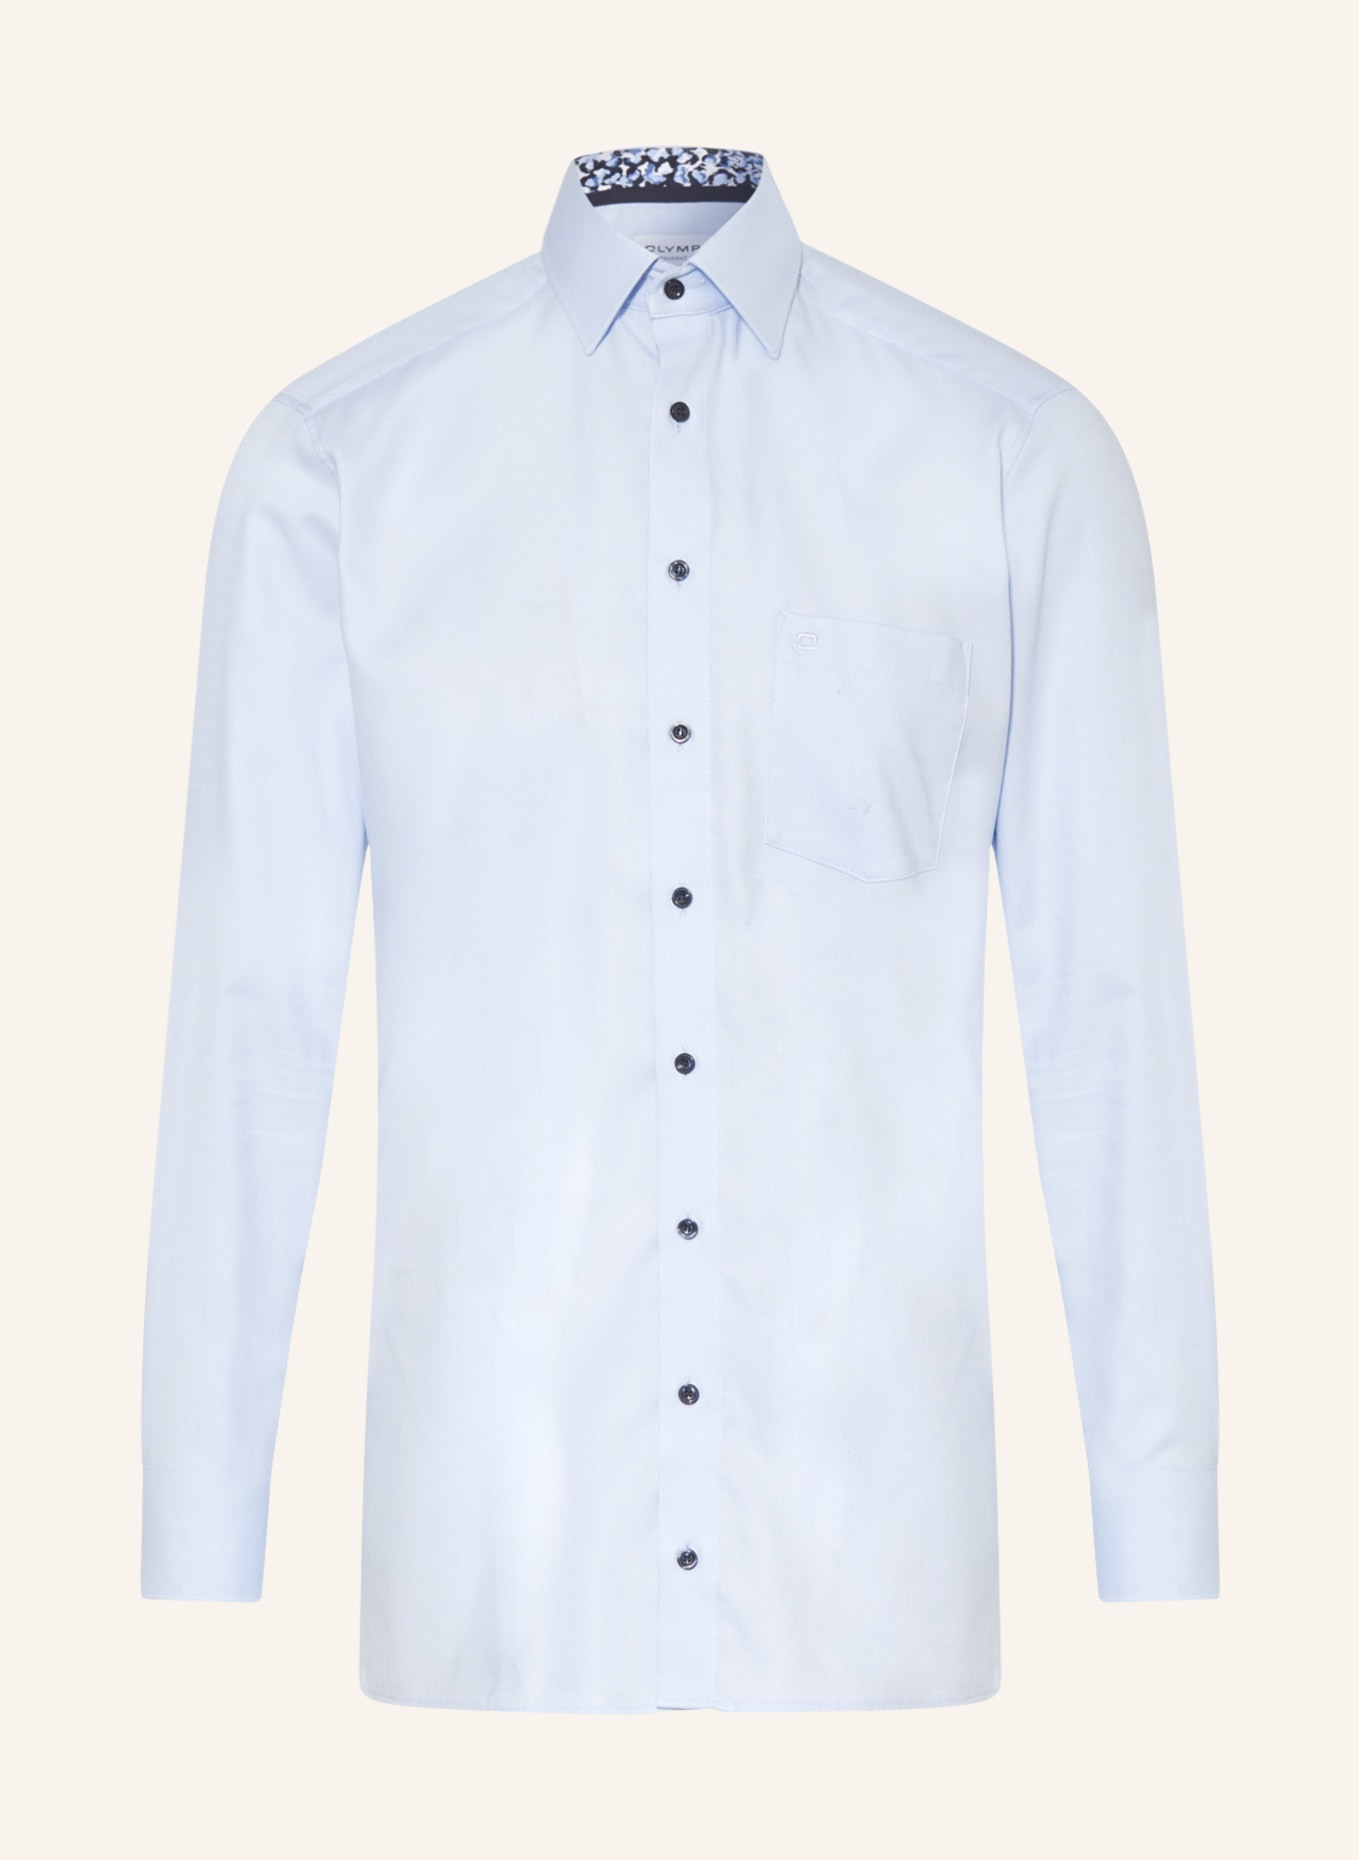 OLYMP Koszula, krój zbliżony do modern fit, Kolor: JASNONIEBIESKI (Obrazek 1)